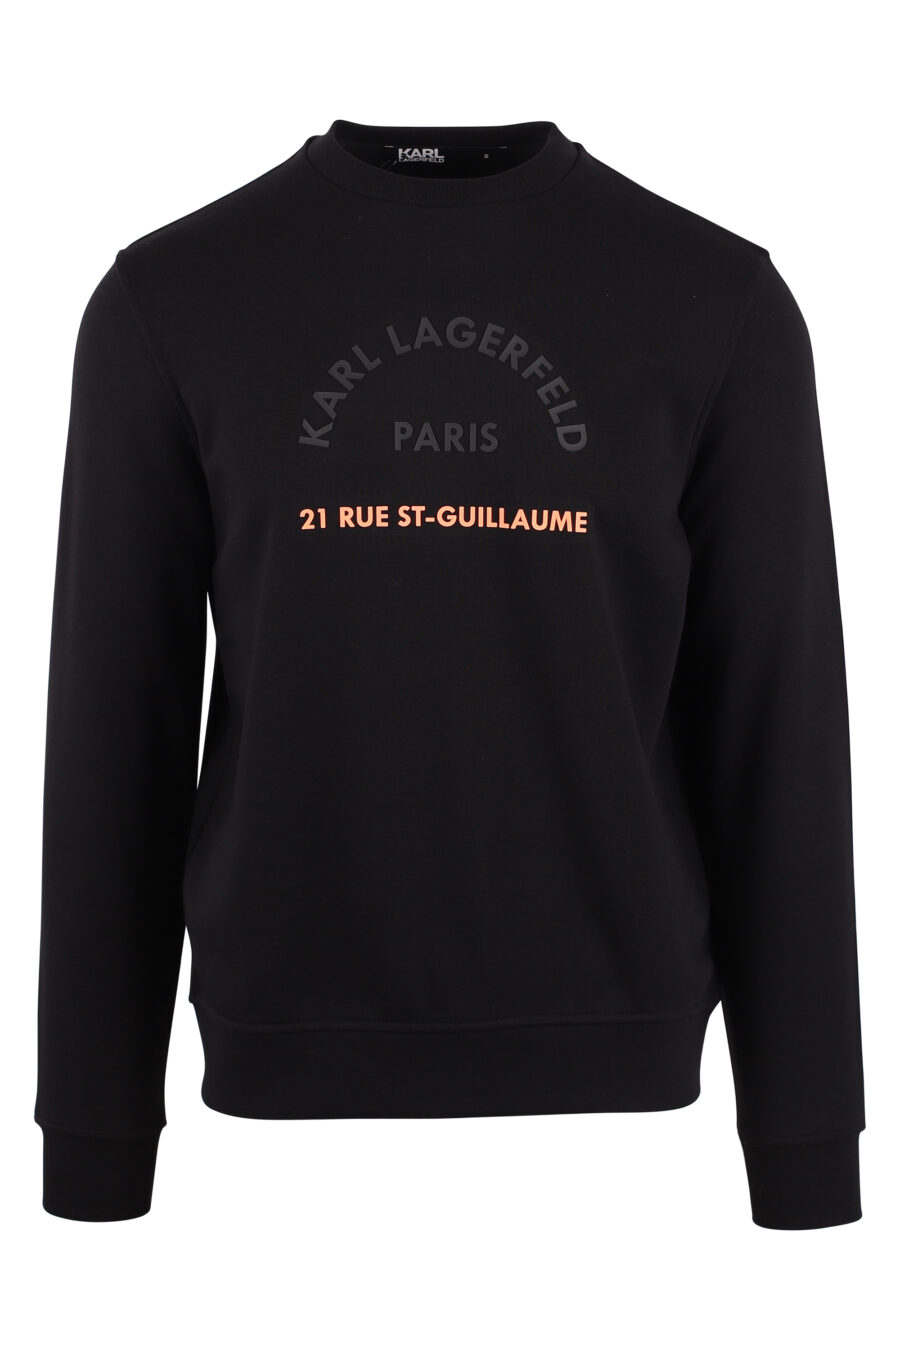 Schwarzes Sweatshirt mit orangem Maxilogo "rue st guillaume" - IMG 9430